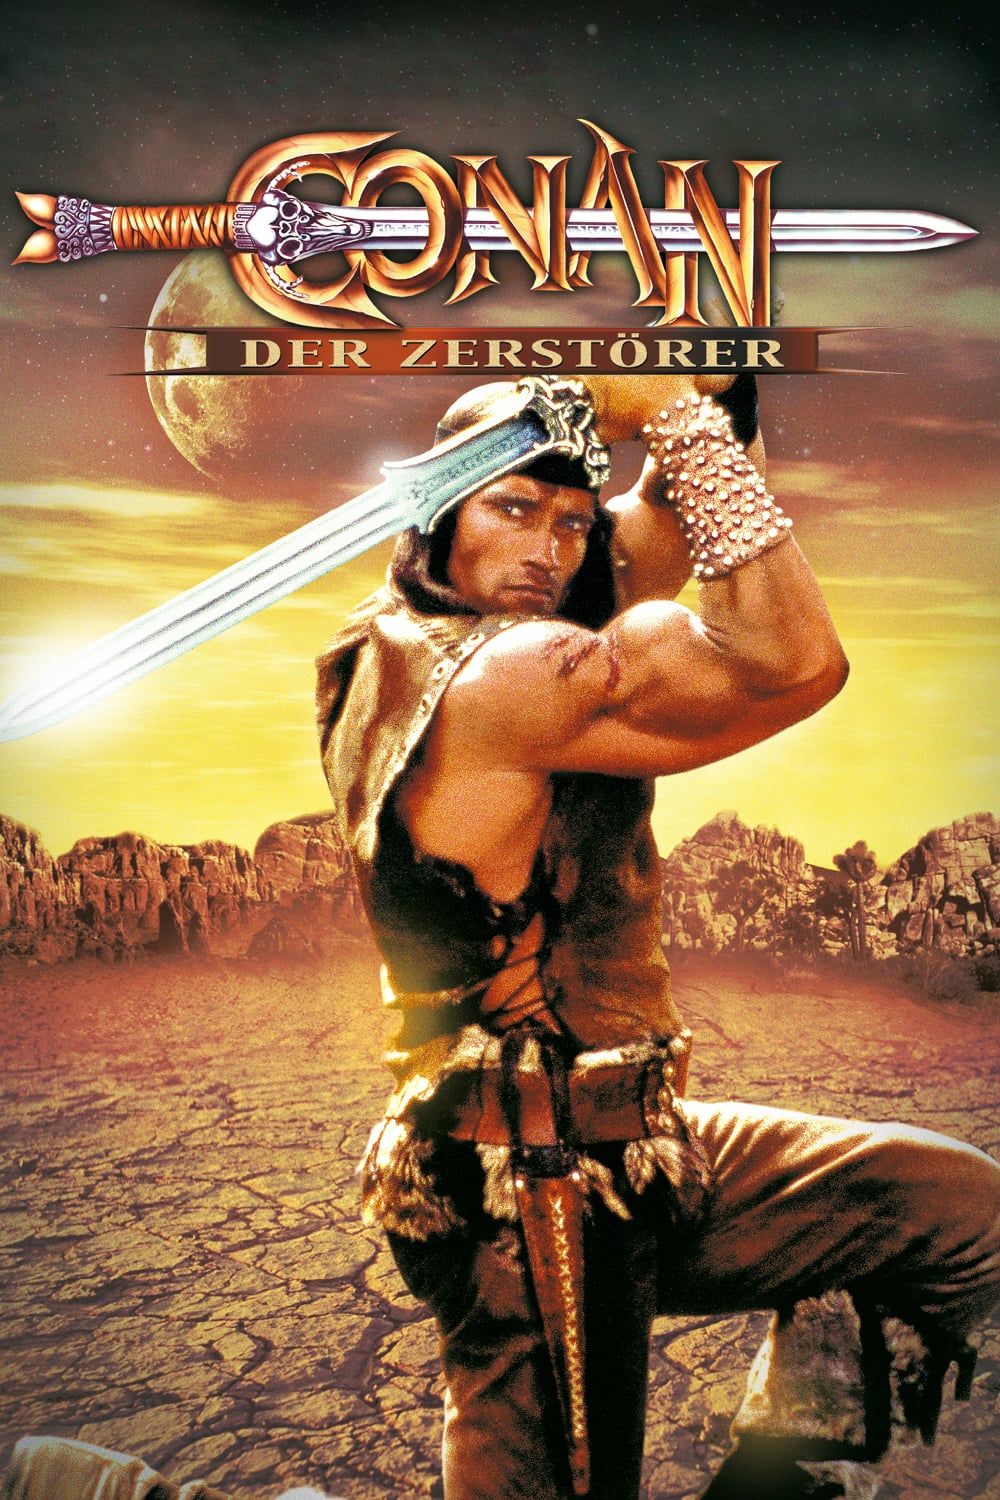 Plakat von "Conan der Zerstörer"